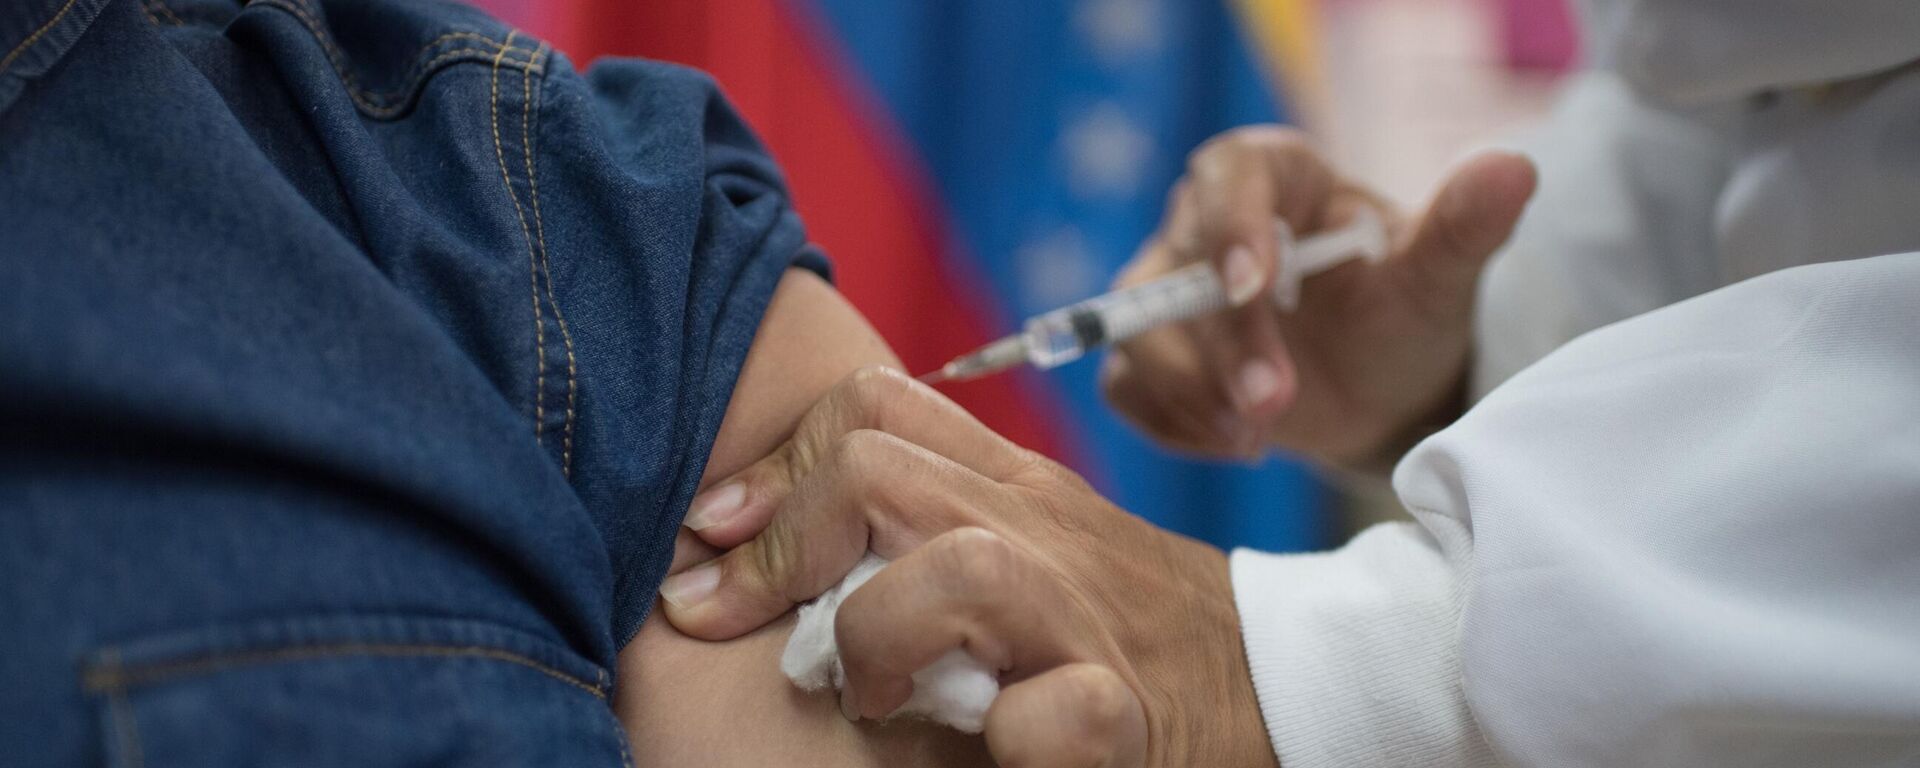 Un trabajador de la salud de Venezuela inyecta una dosis de Sputnik V a un paciente en Caracas, Venezuela - Sputnik Mundo, 1920, 23.02.2021